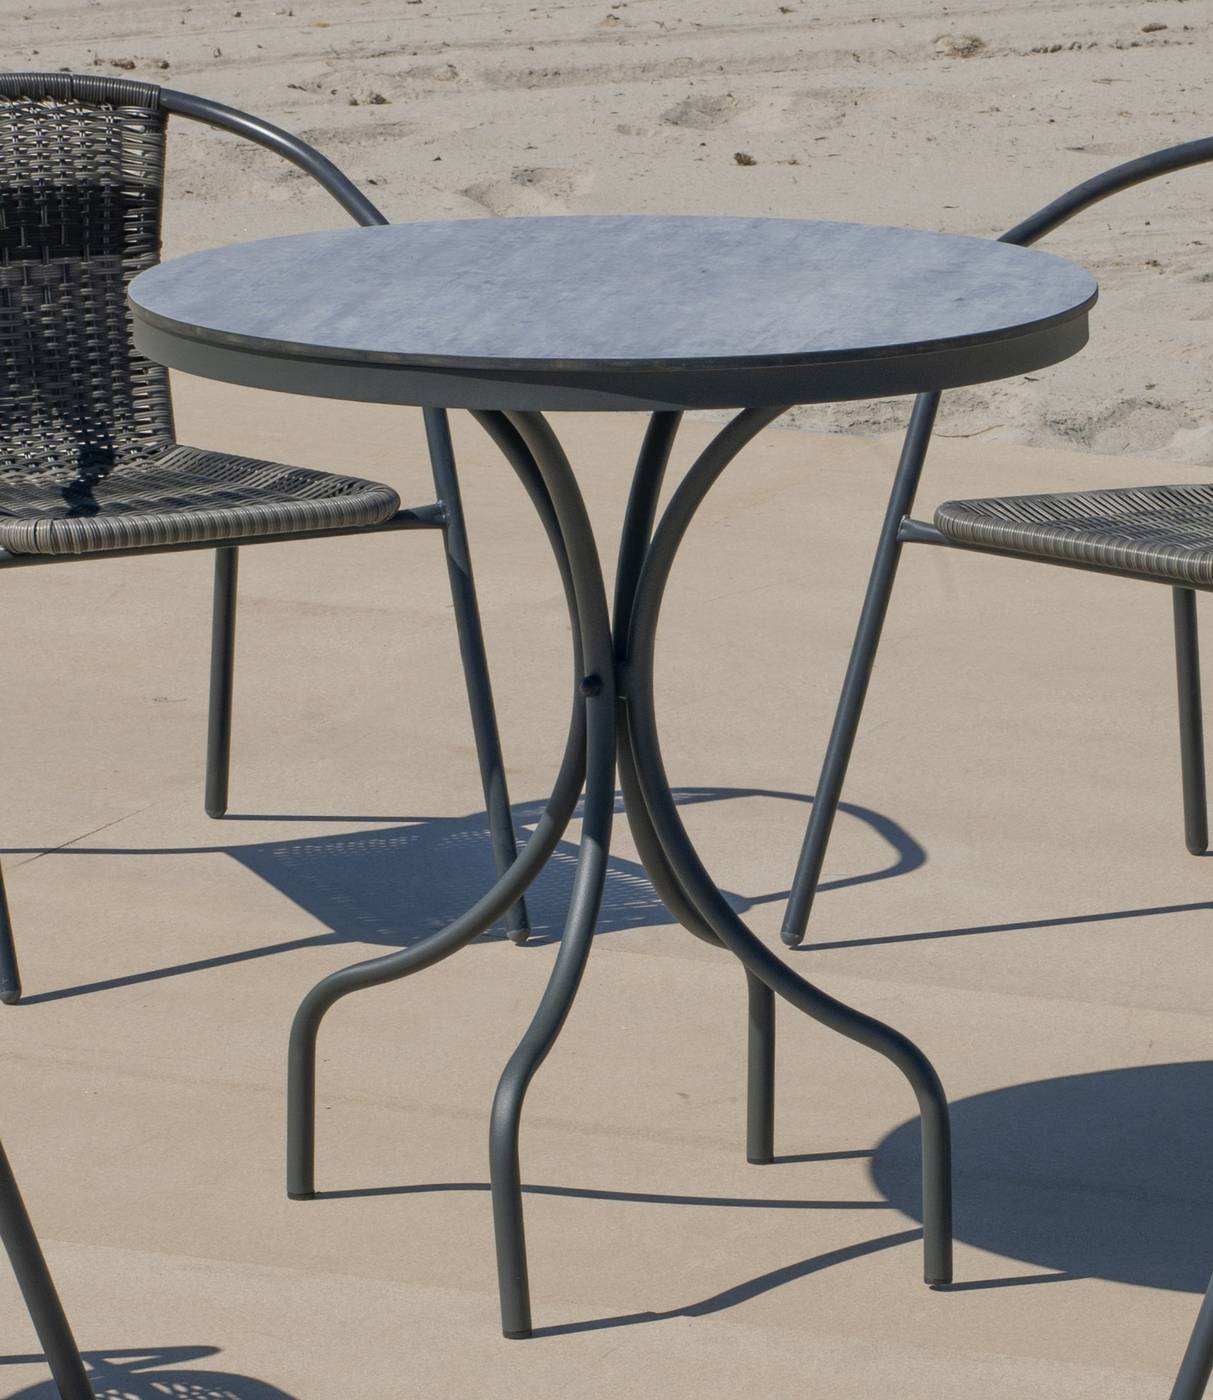 Set Oberoy-75-4 Leiran - Conjunto aluminio color gris: Mesa redonda con tablero HPL de 75 cm + 4 sillones de textilen.